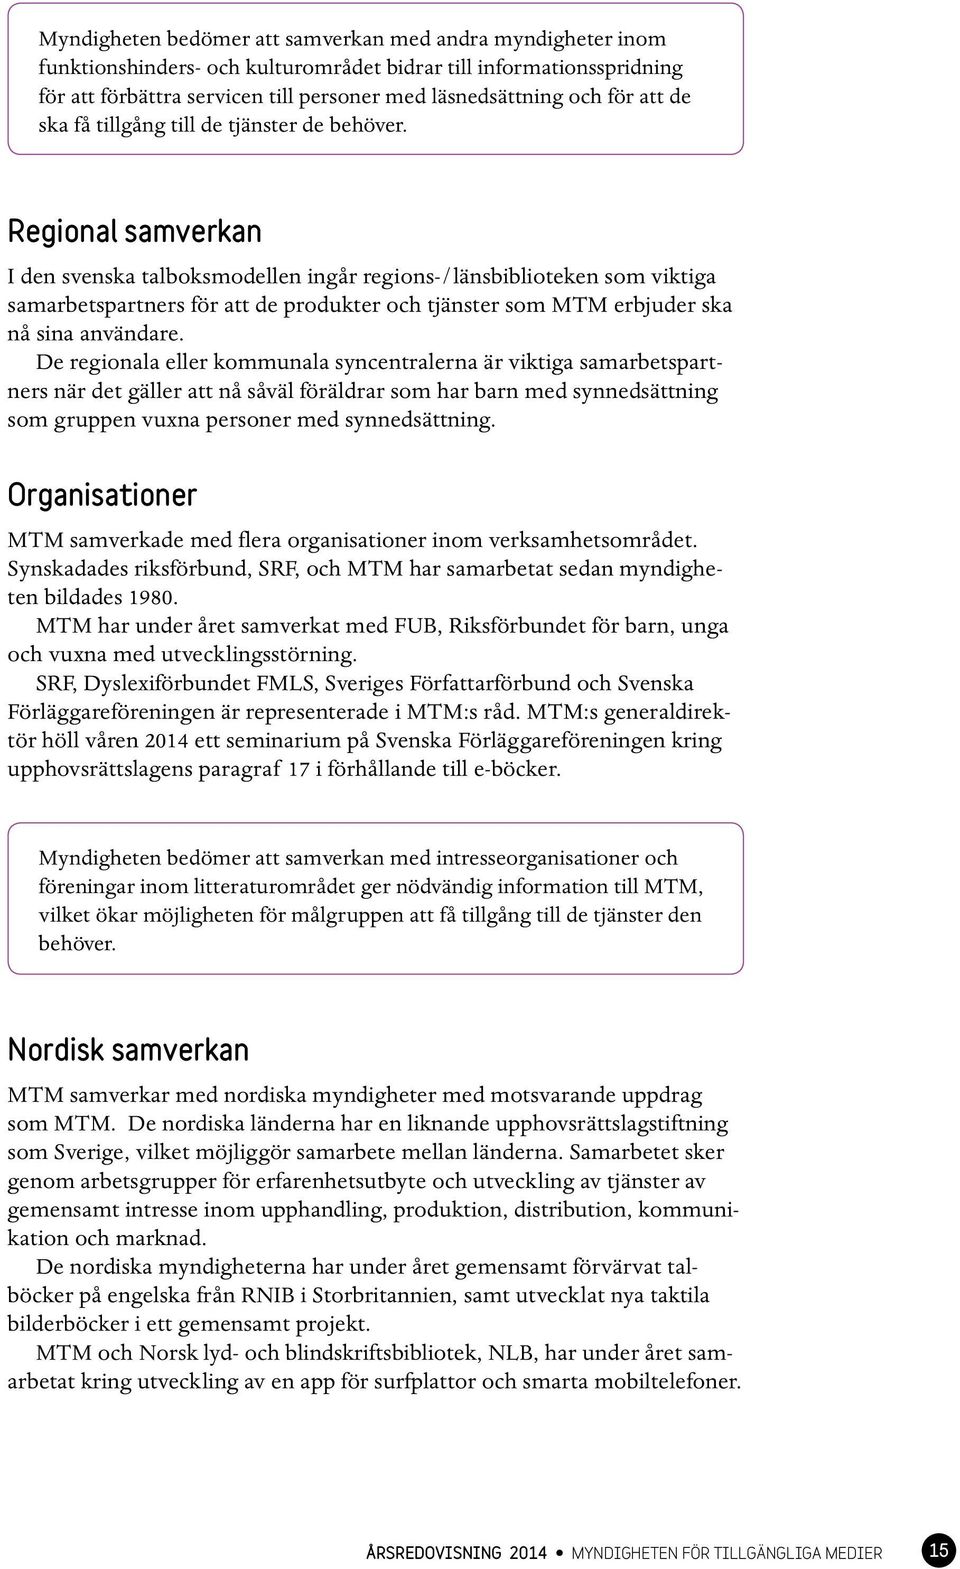 Regional samverkan I den svenska talboksmodellen ingår regions-/länsbiblioteken som viktiga samarbetspartners för att de produkter och tjänster som MTM erbjuder ska nå sina användare.